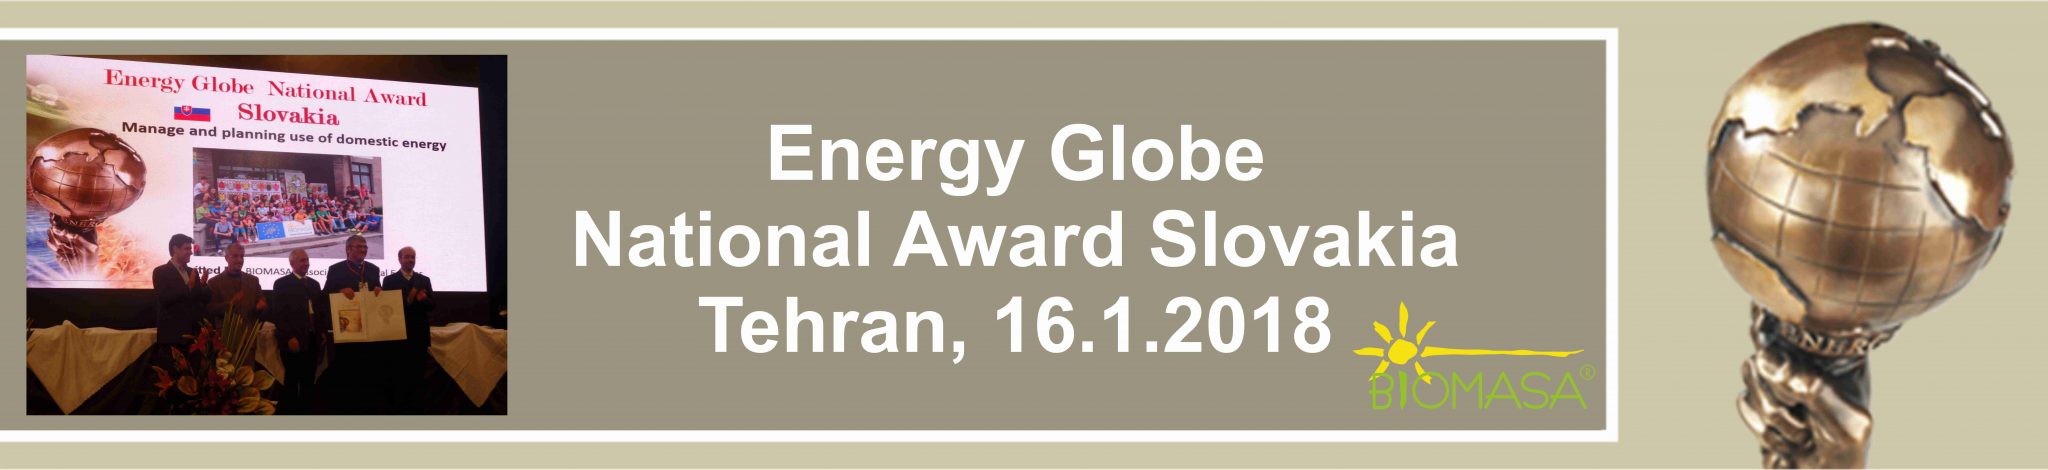 Odovznávanie Energy Globe v Teheráne